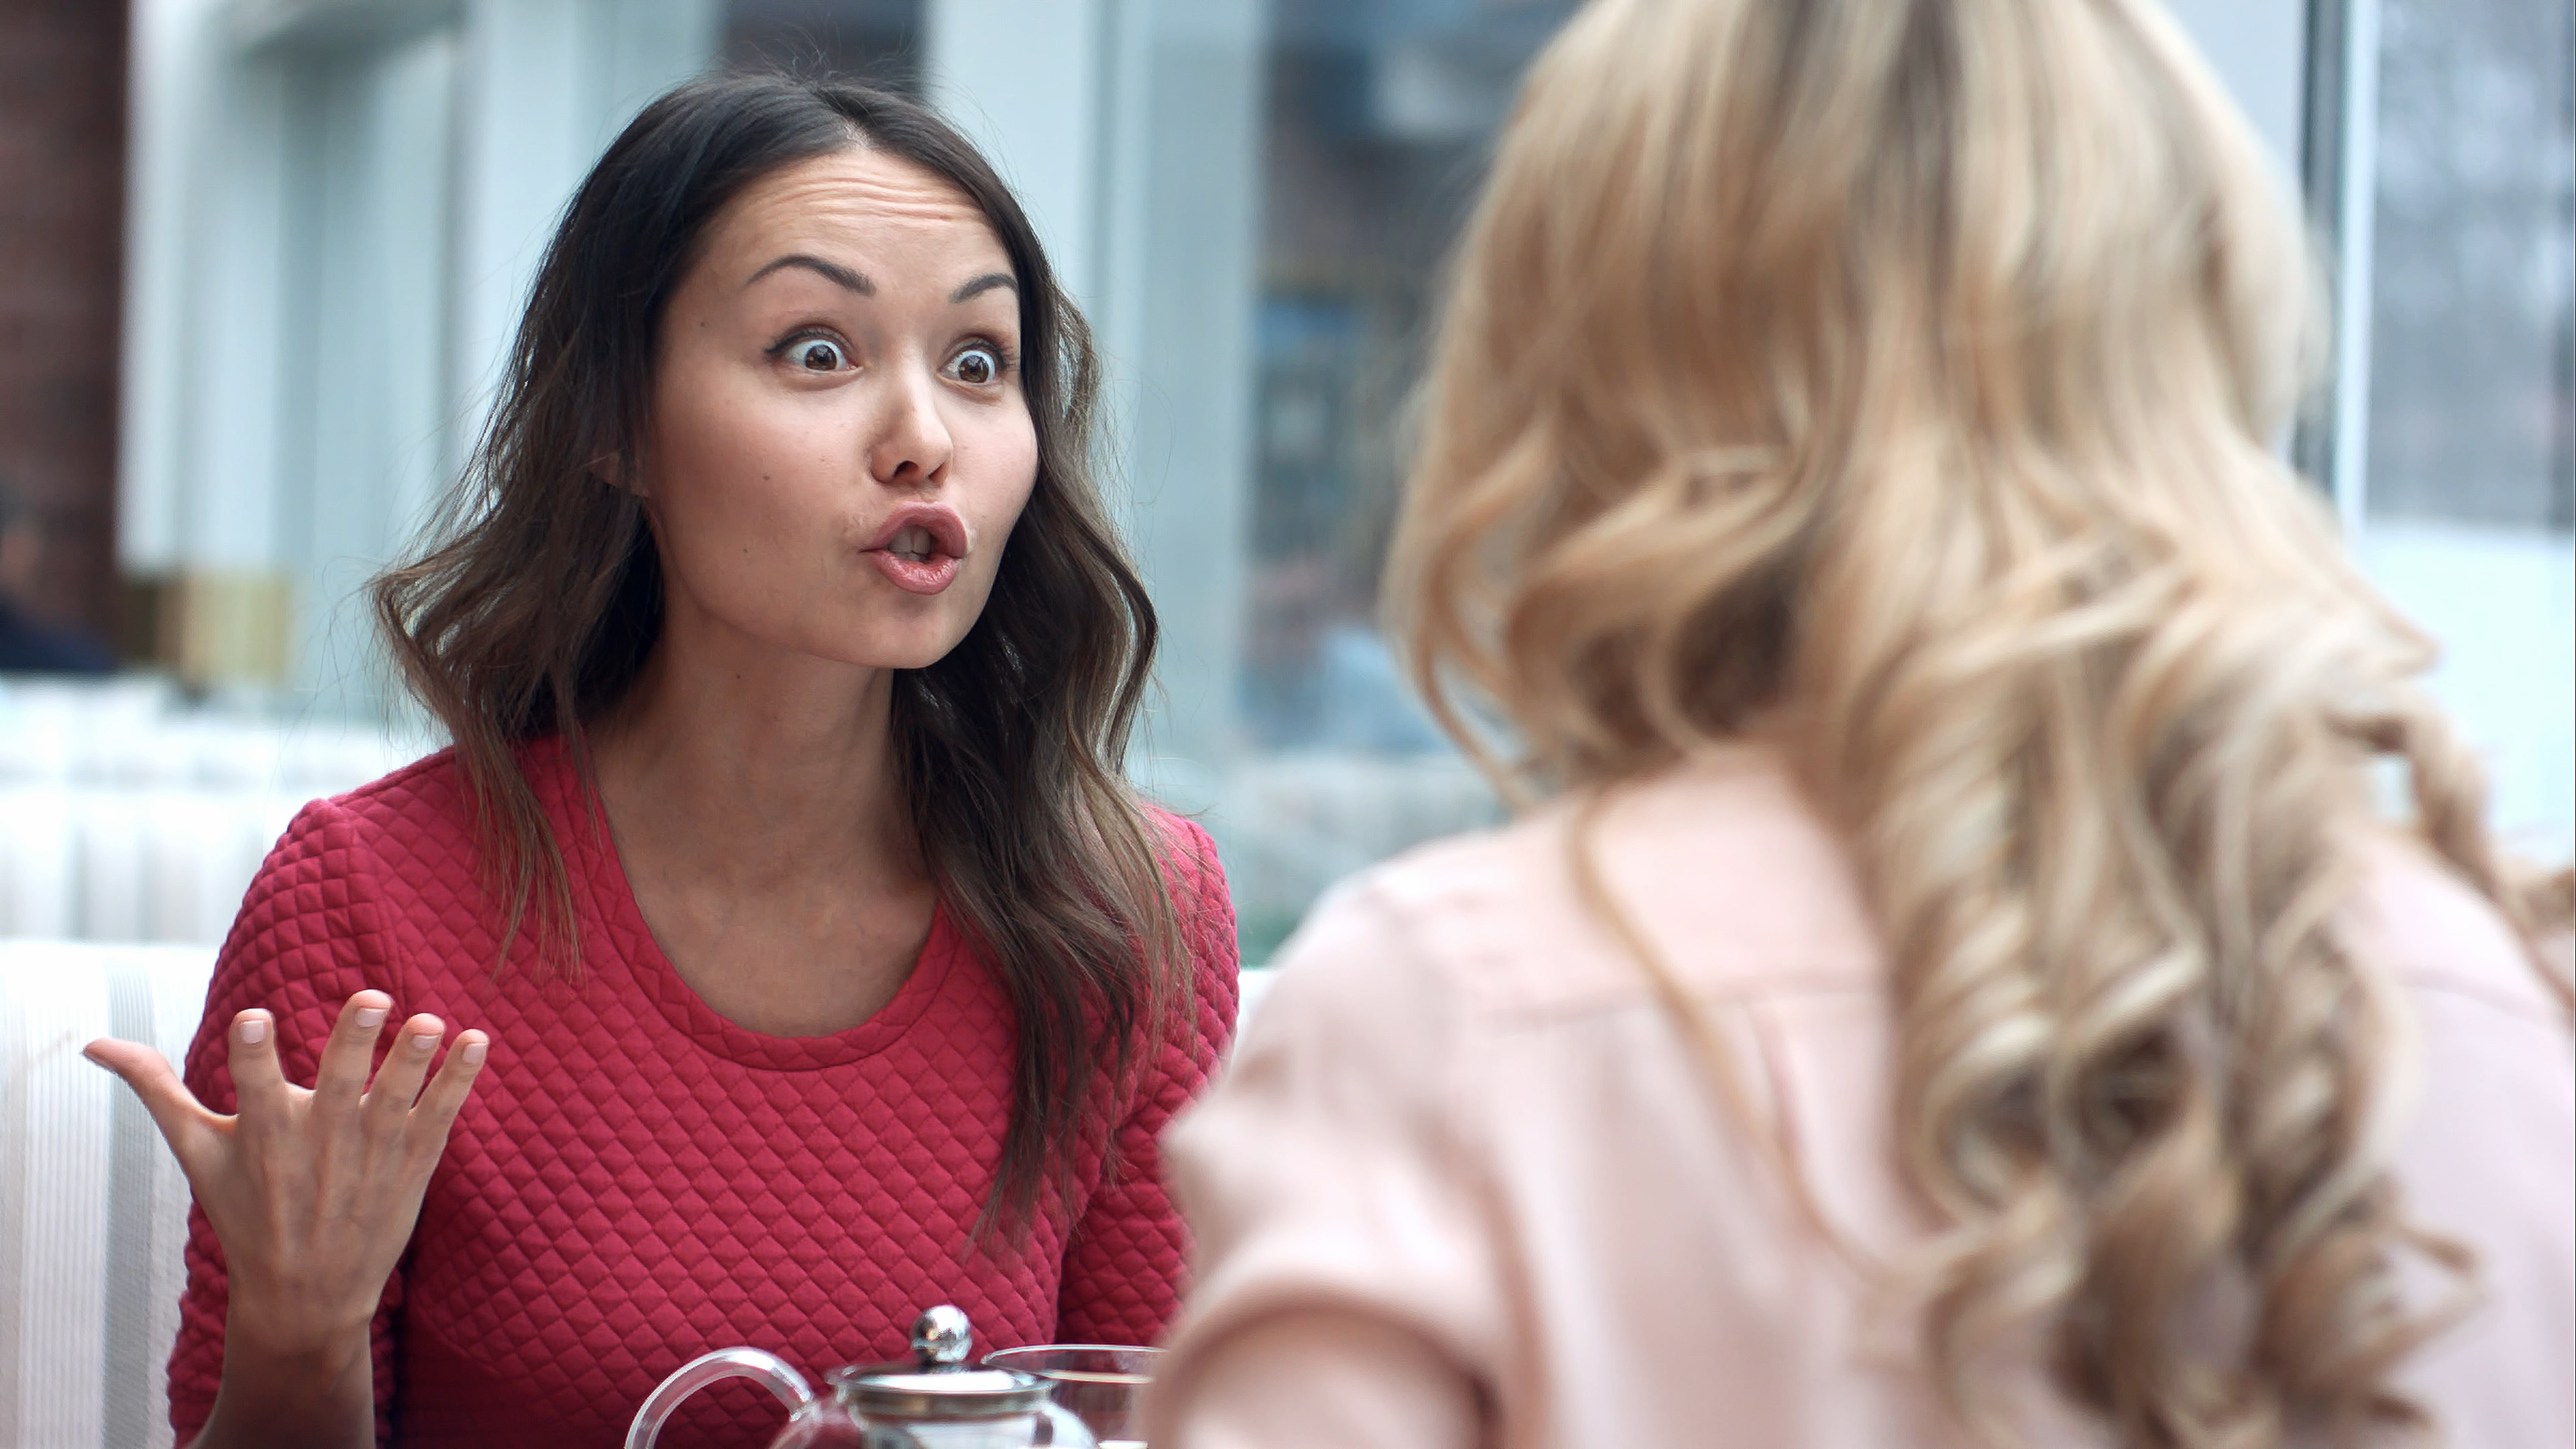 Deux femmes se disputent dans un café | Source : Shutterstock